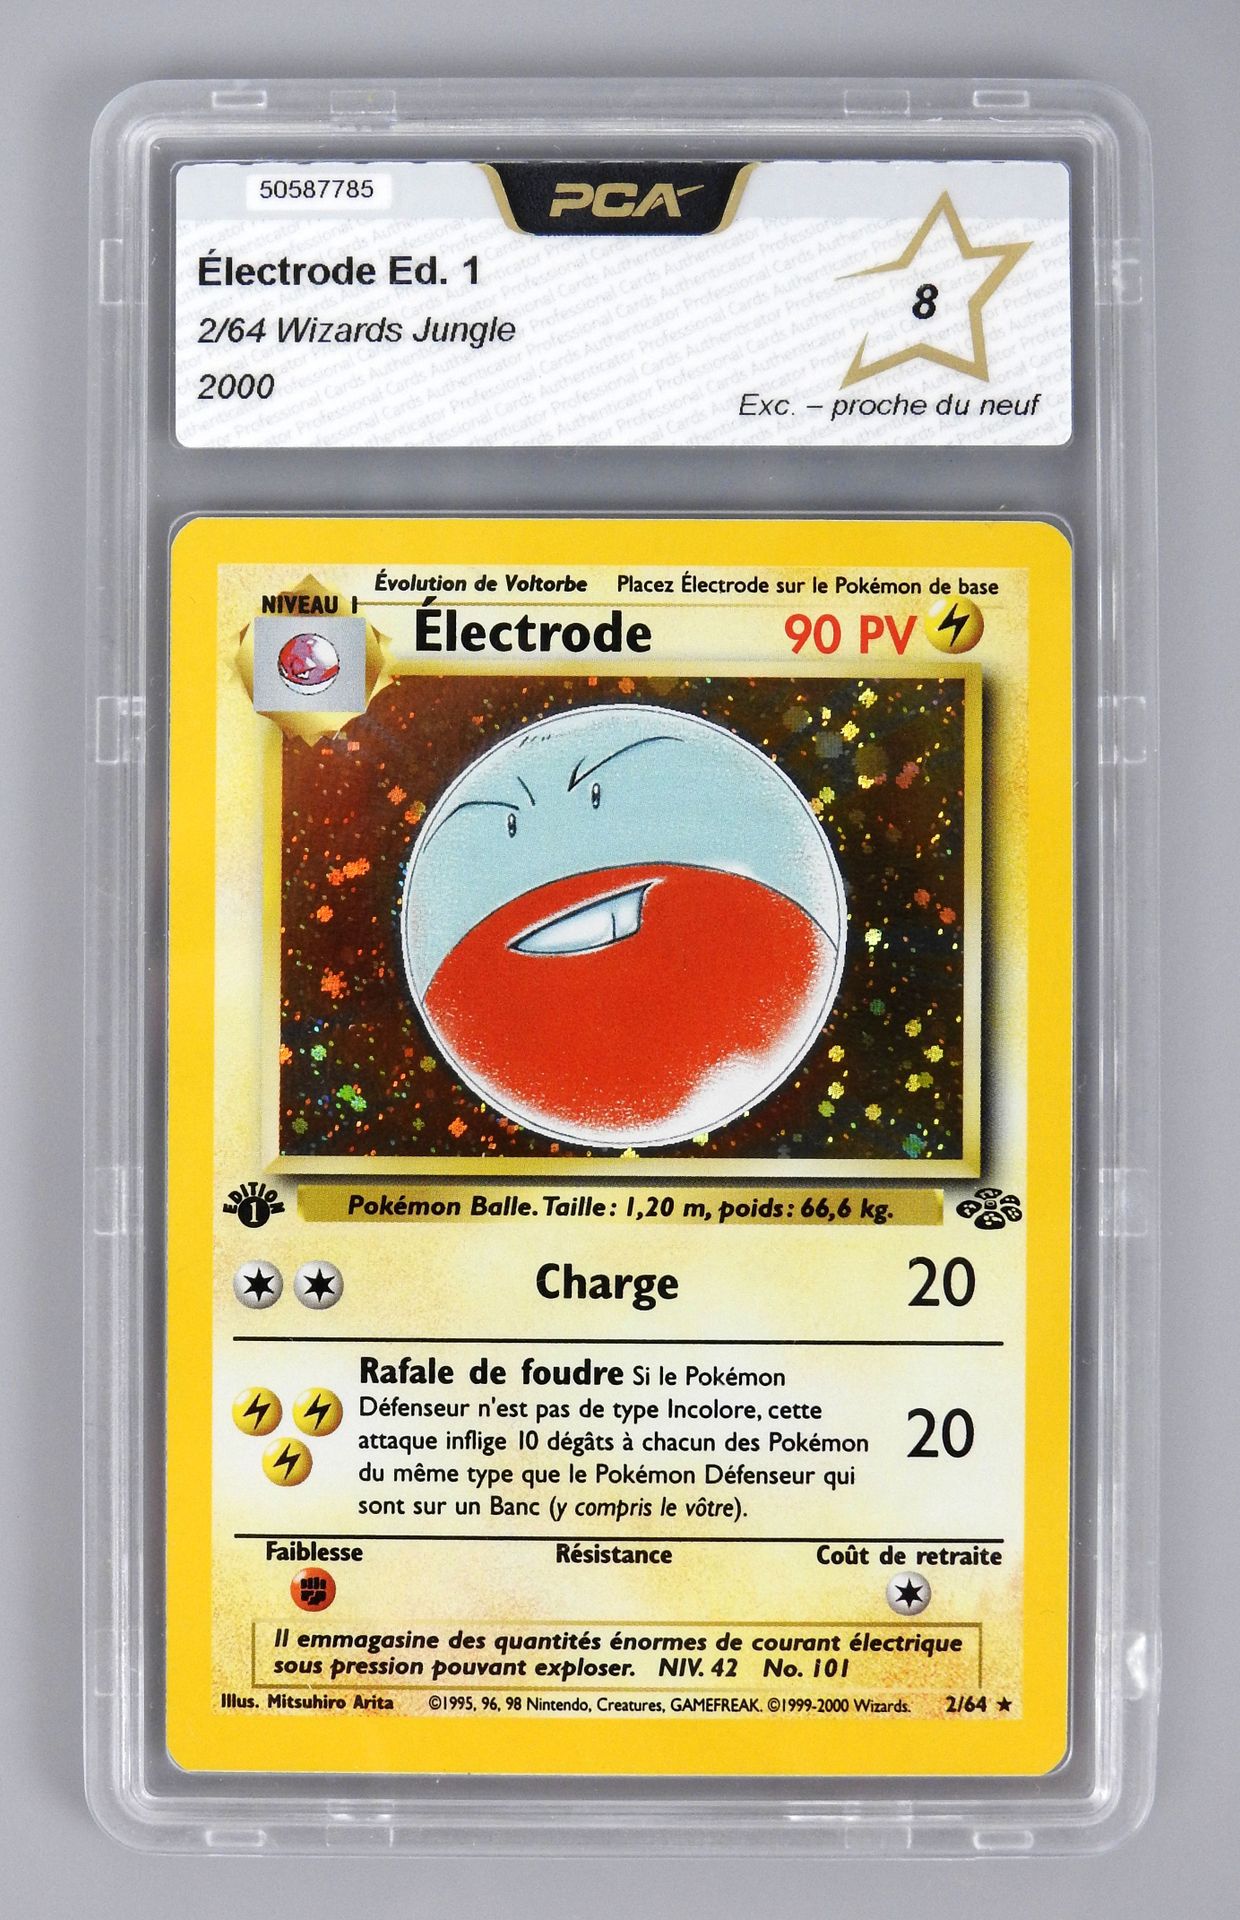 Null ELECTRODO Ed 1

Bloque de Jungla de los Hechiceros 2/64

Tarjeta Pokémon ca&hellip;